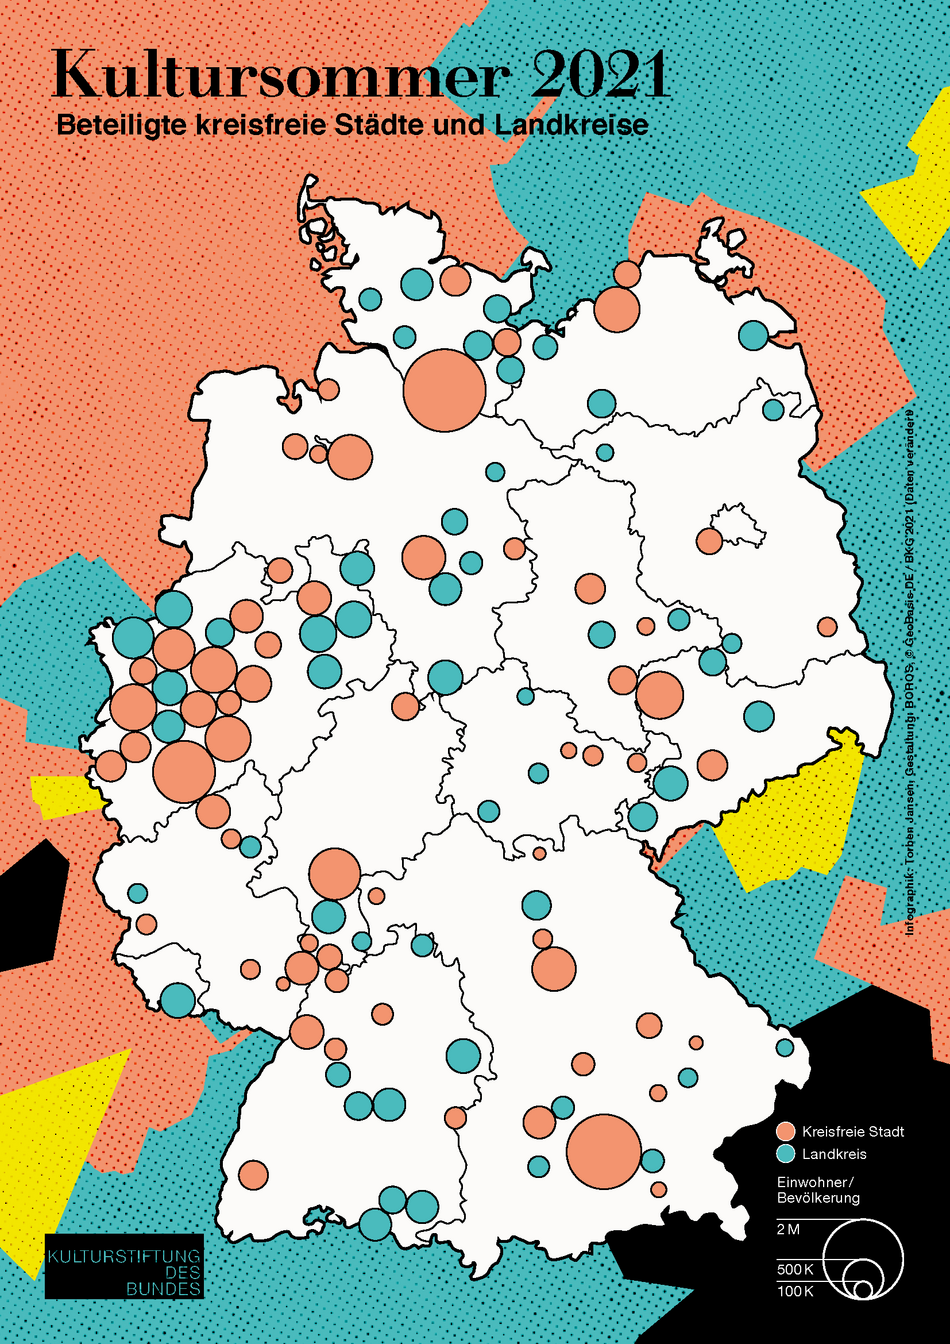 Deutschlandkarte mit Markierung beteiligter kreisfreier Städte und Landkreise beim Kultursommer 2021 (öffnet Vergrößerung des Bildes)